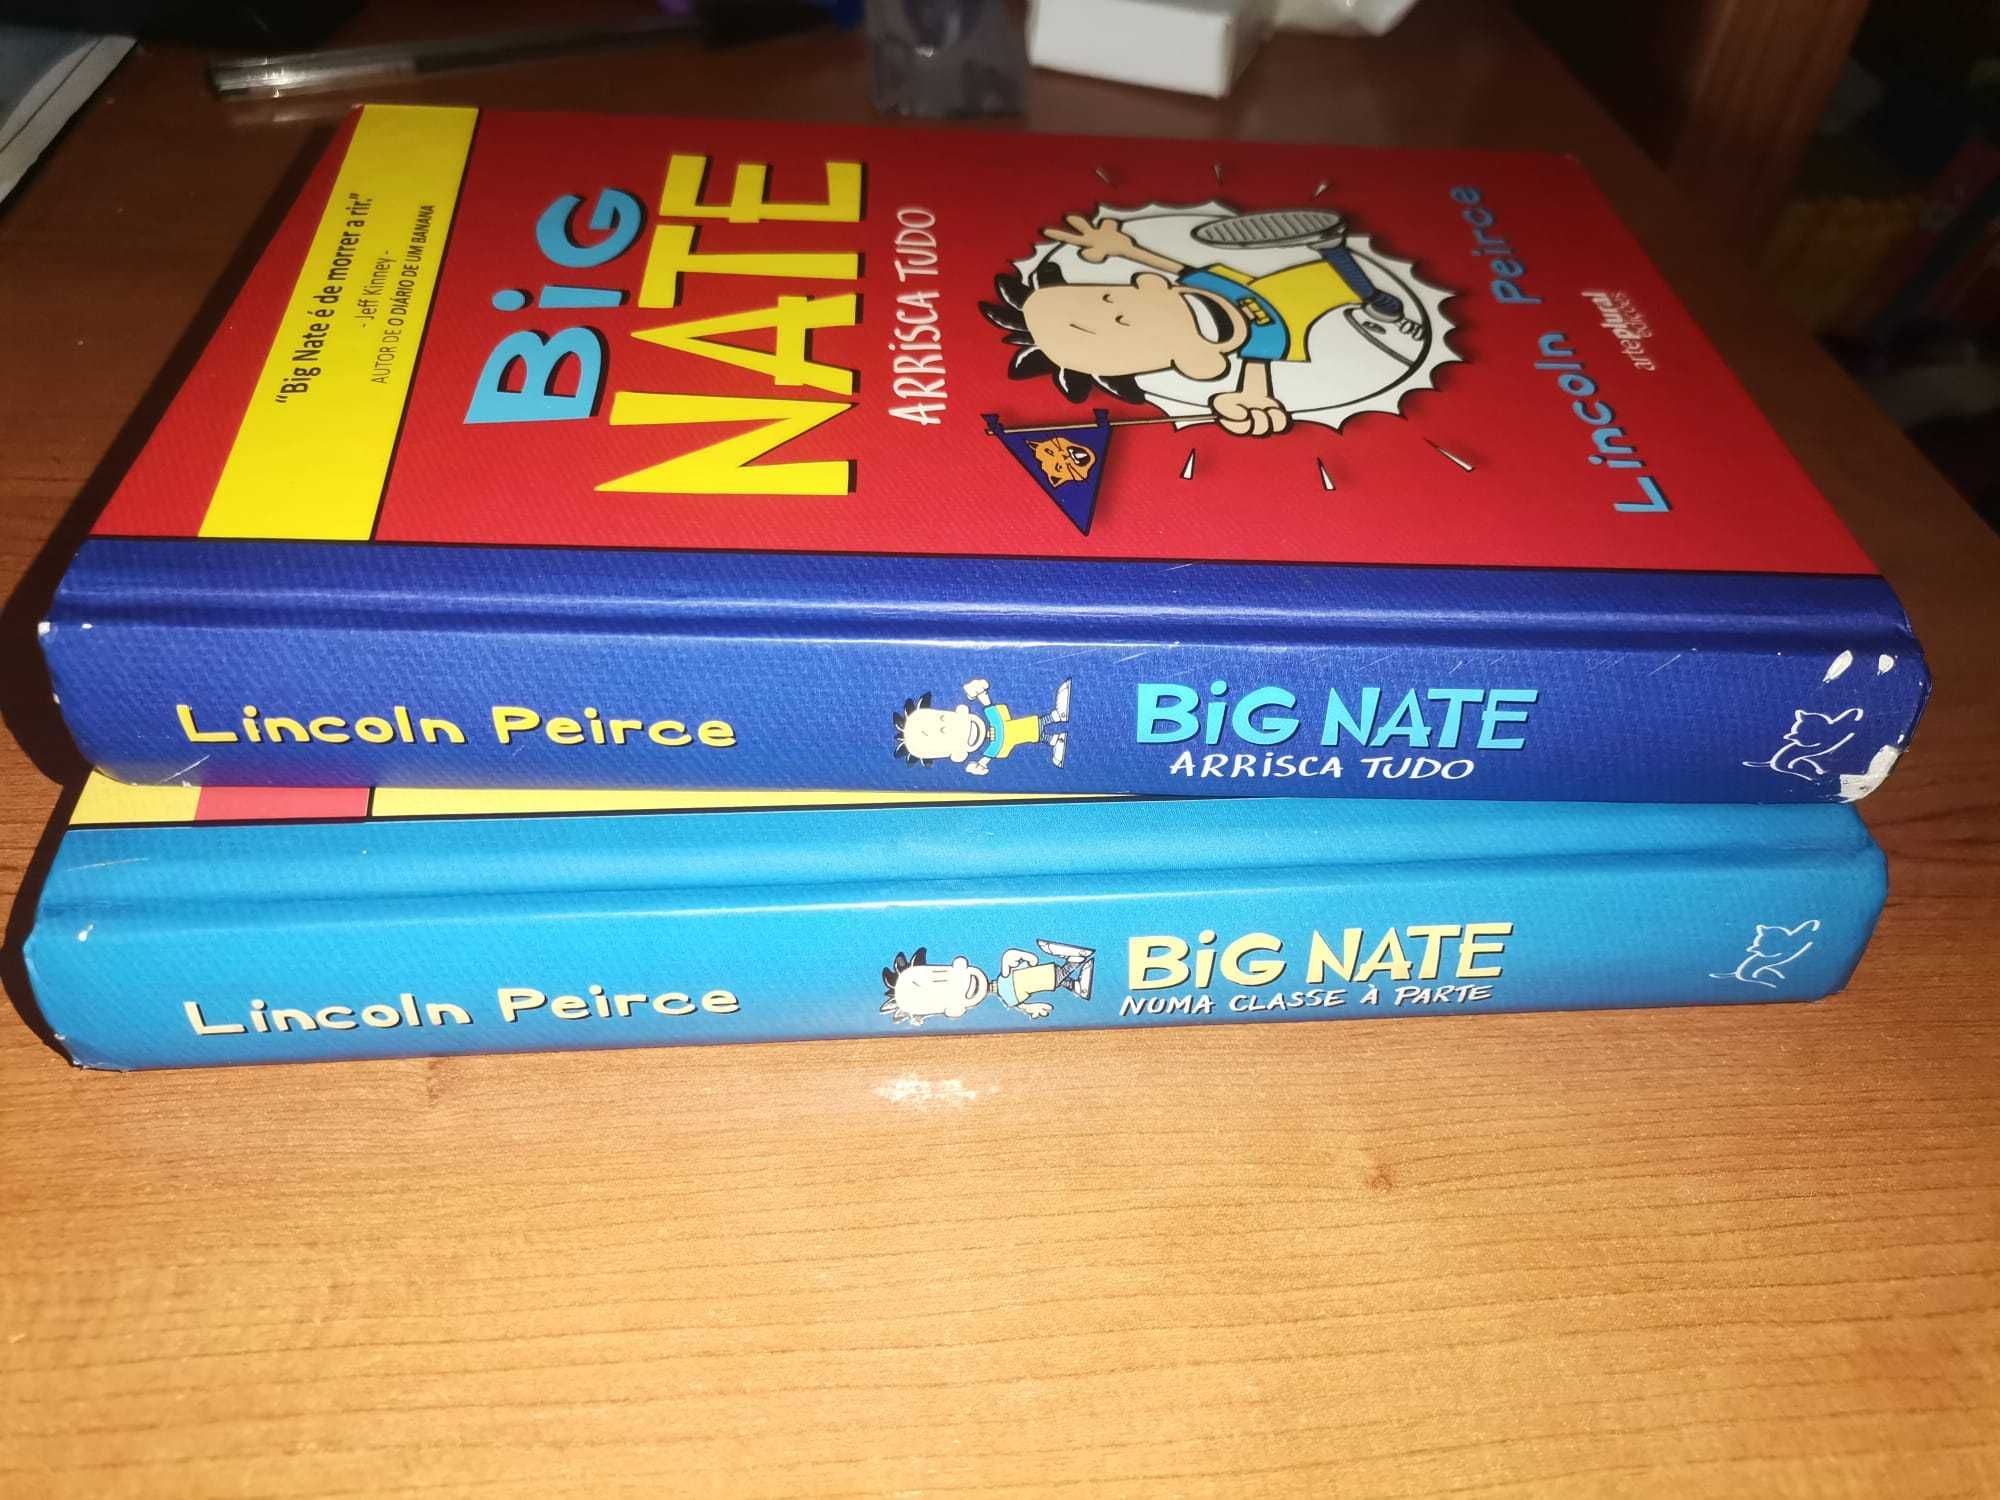 Livros da coleção Big Nate